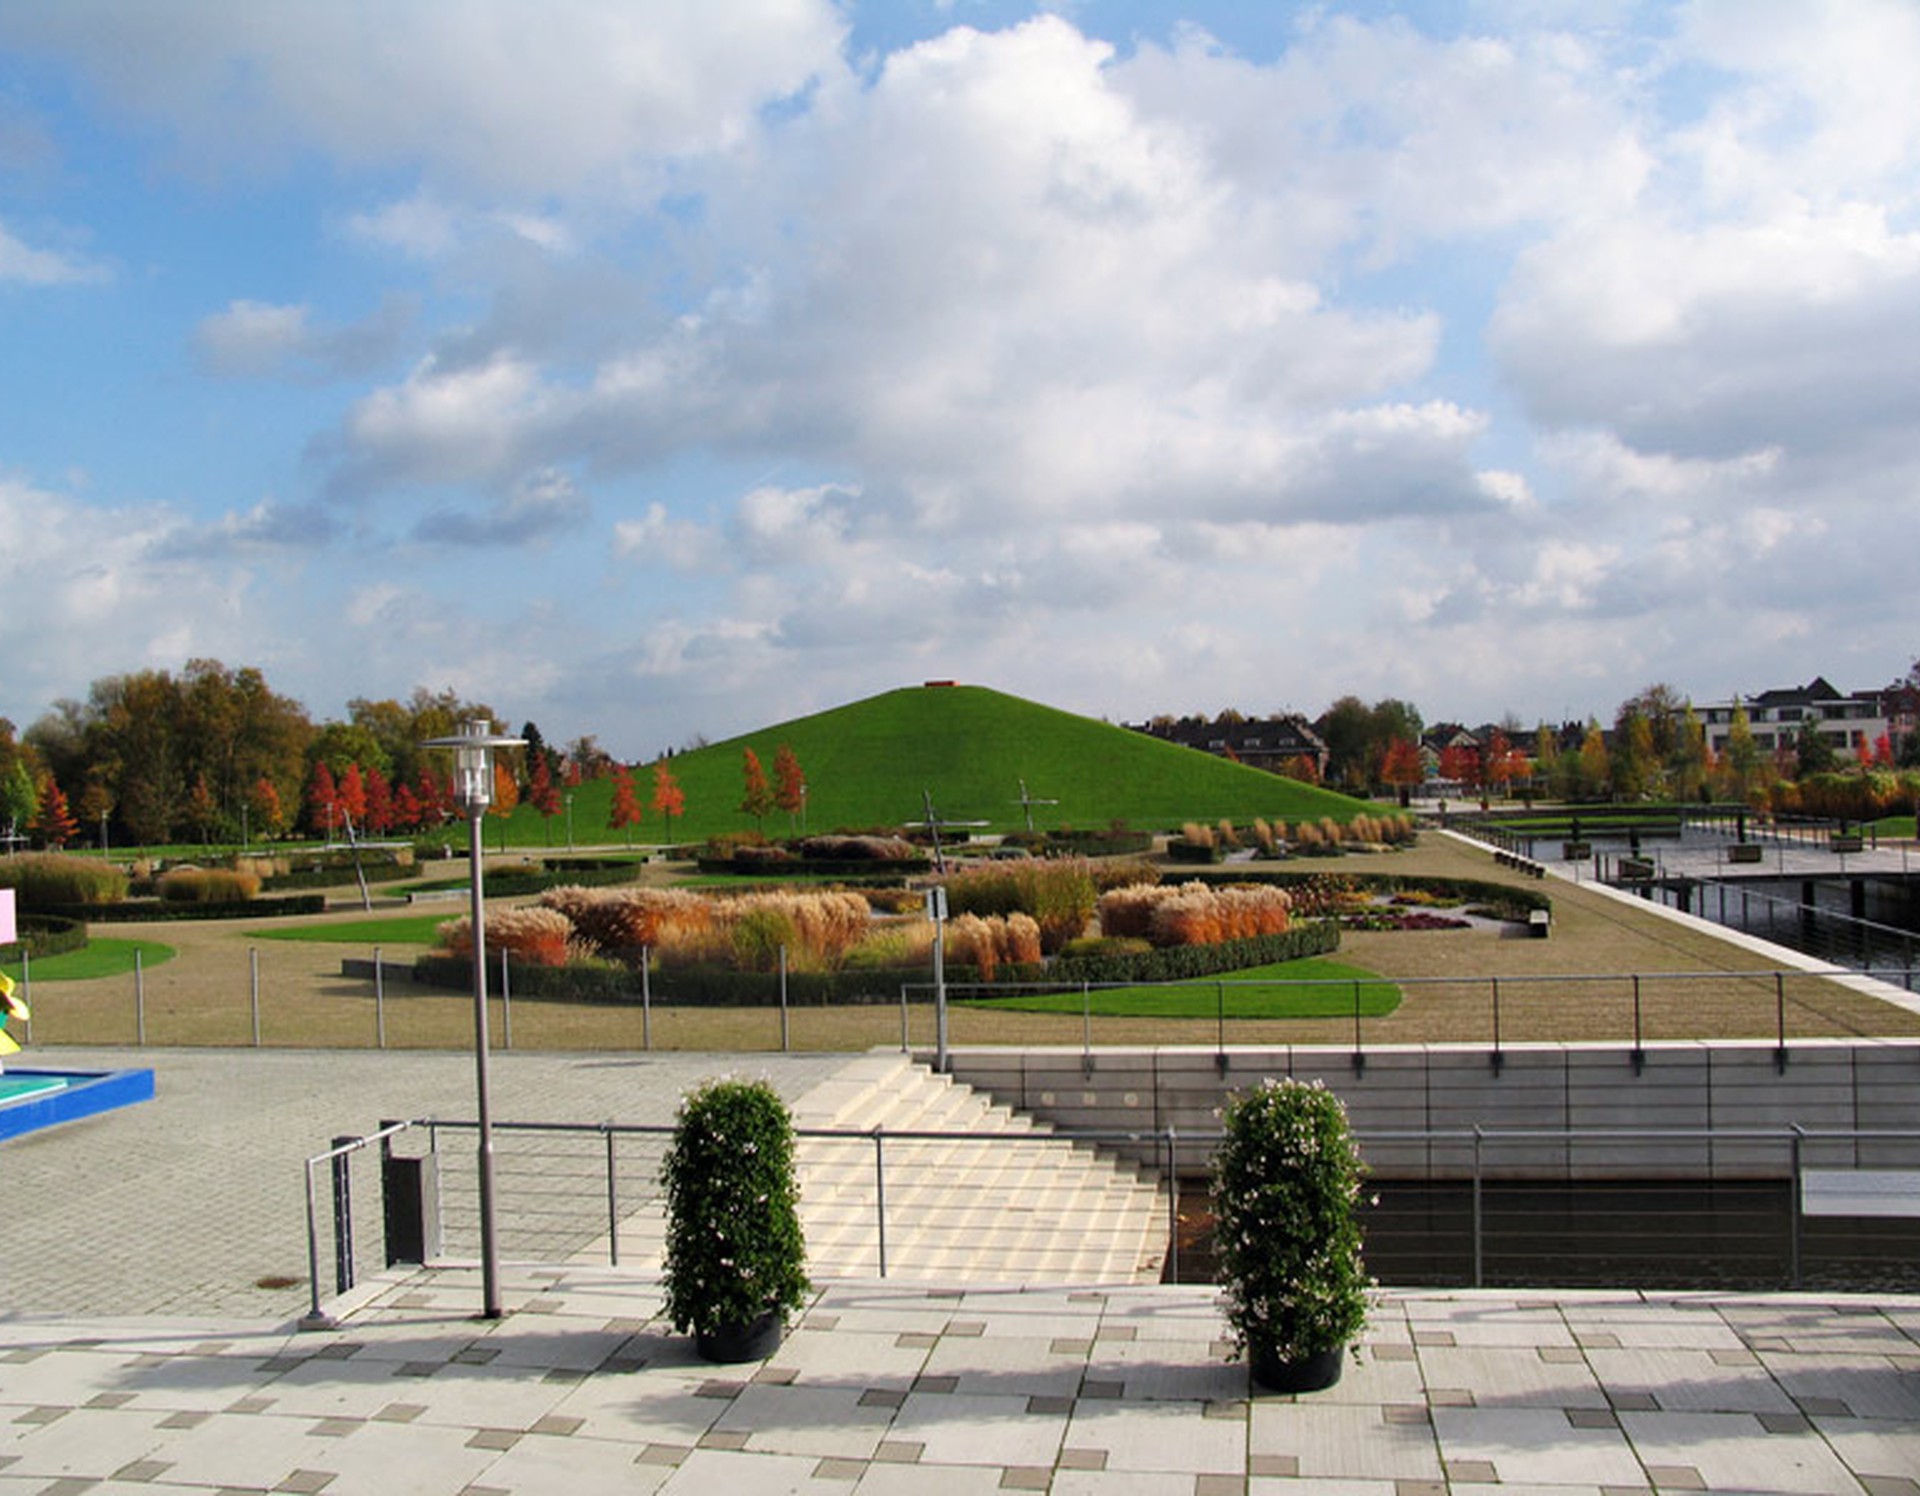 Blick auf die Pyramide des Inselparks Gronau. Im Bereich vor der Pyramide befinden sich Beete mit Gräsern.